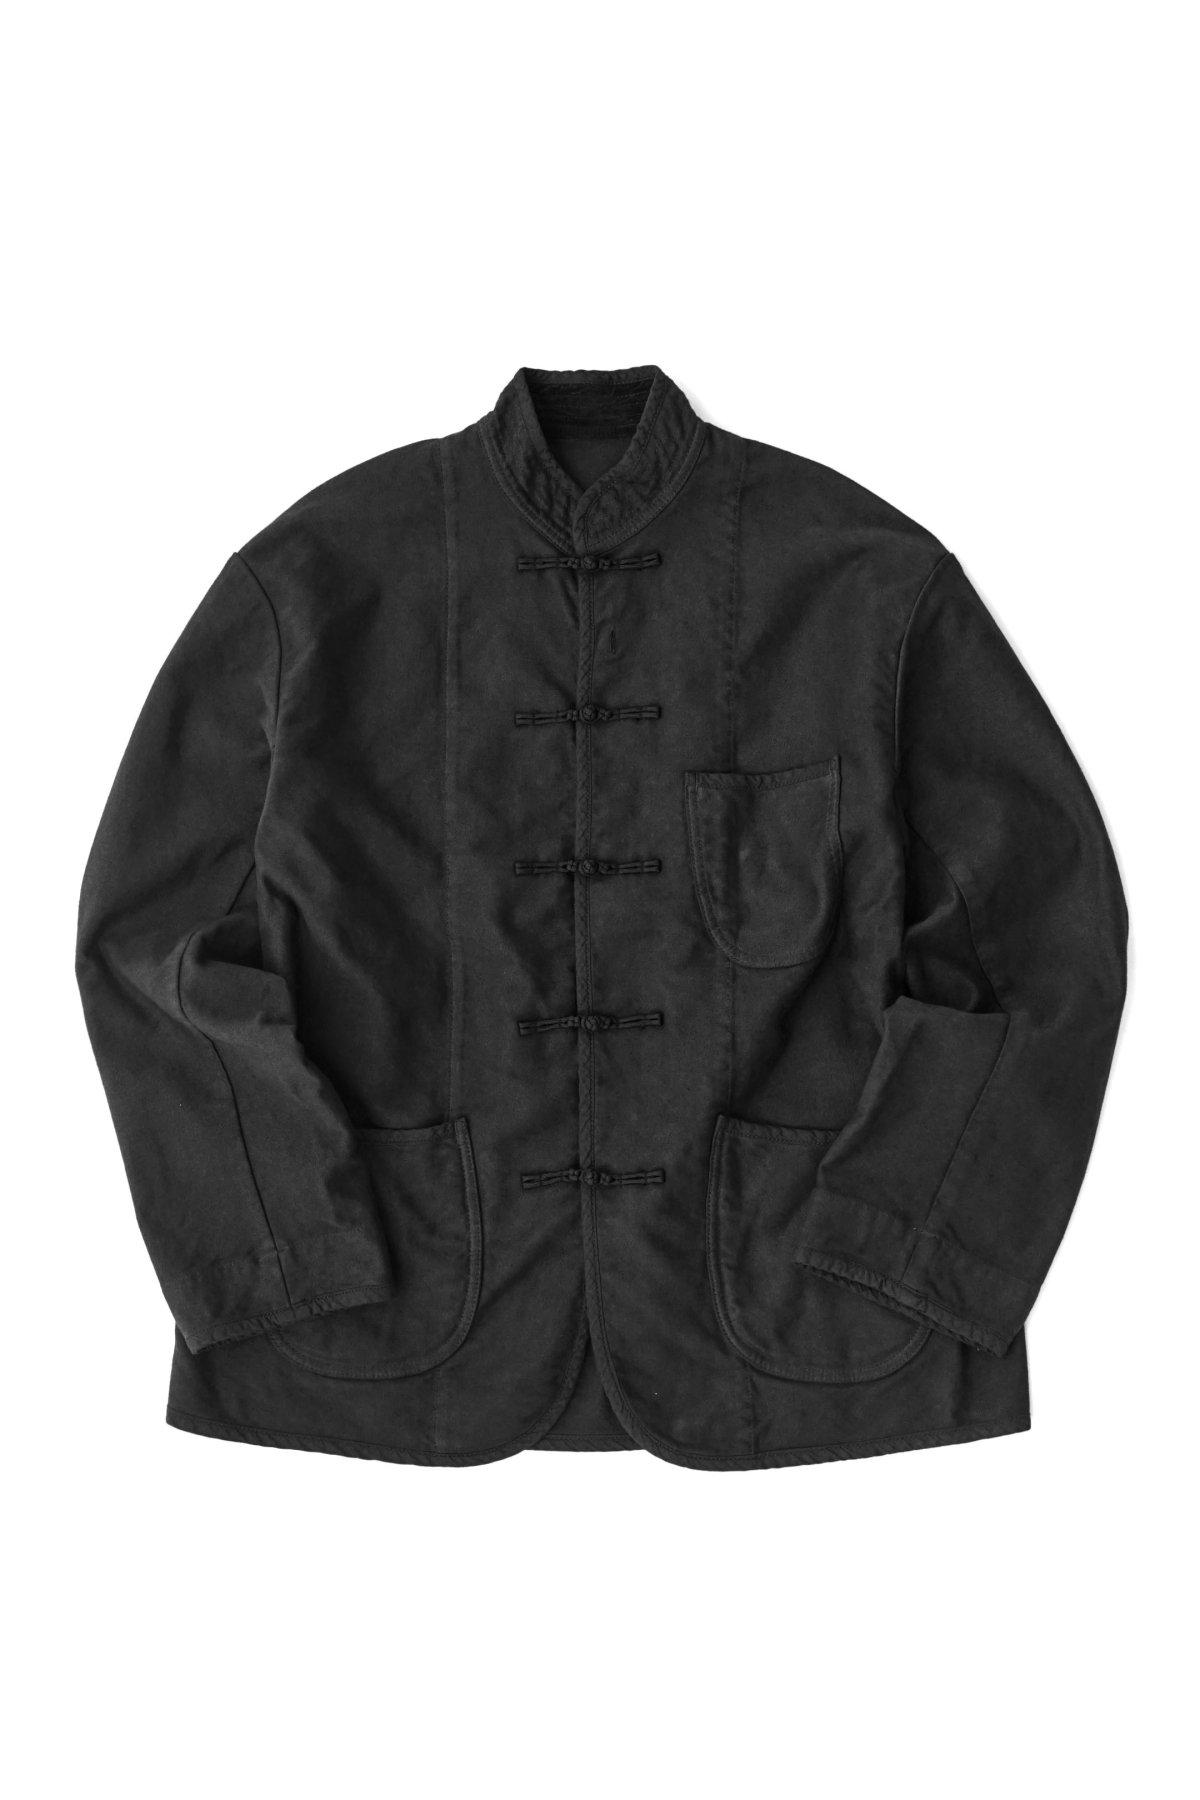 18aw porterclassic kendo china jacket L | www.fleettracktz.com